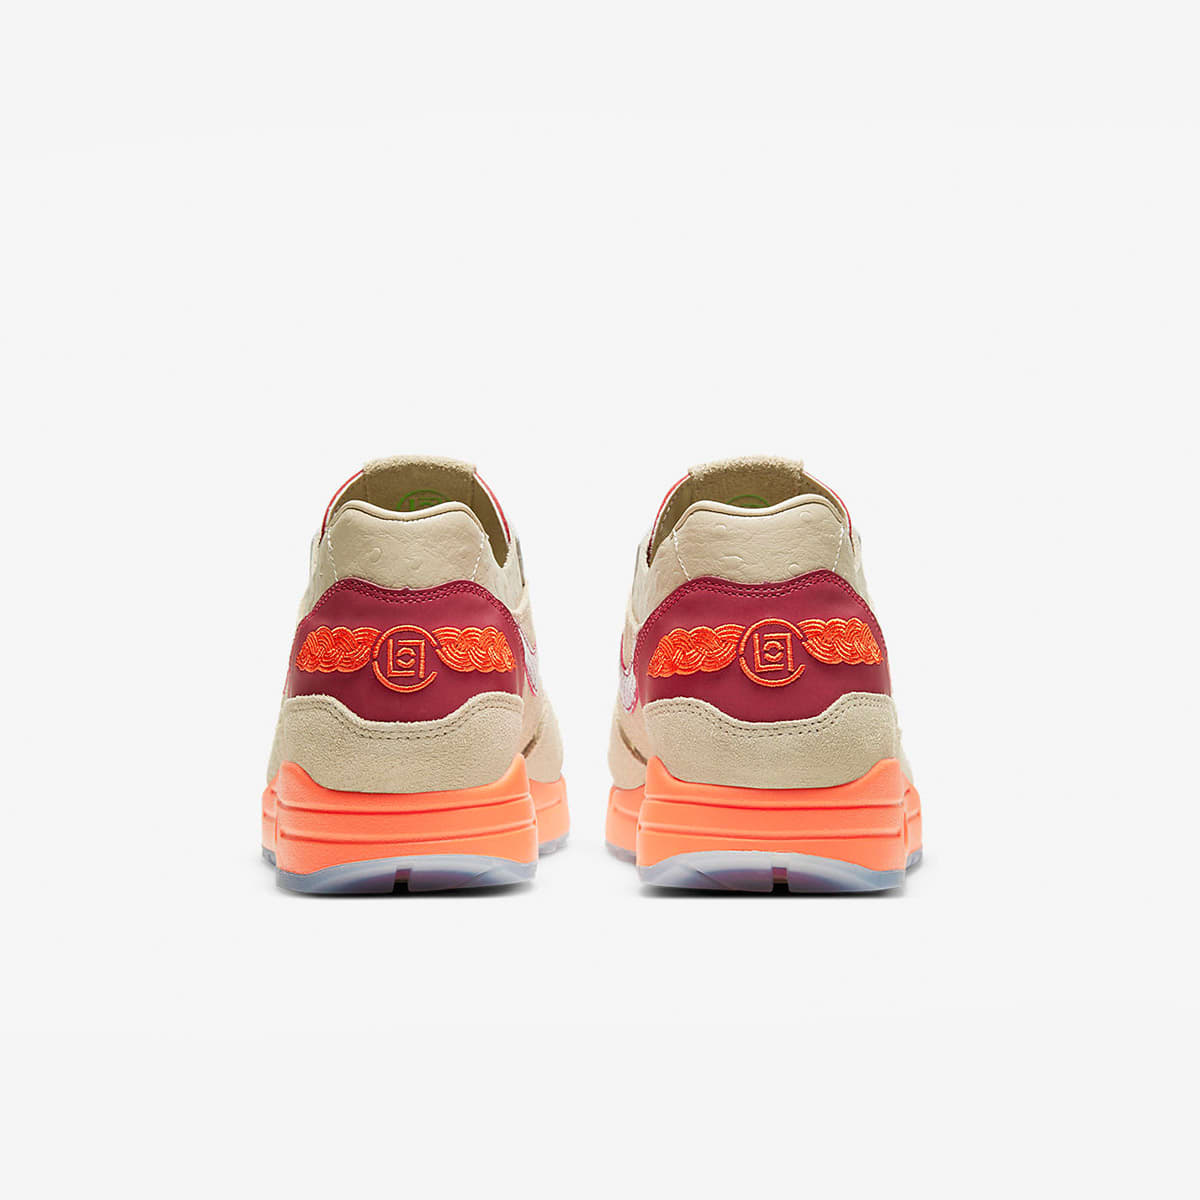 Nike x CLOT Air Max 1 (Net, Deep Red & Orange Blaze) | END. Launches